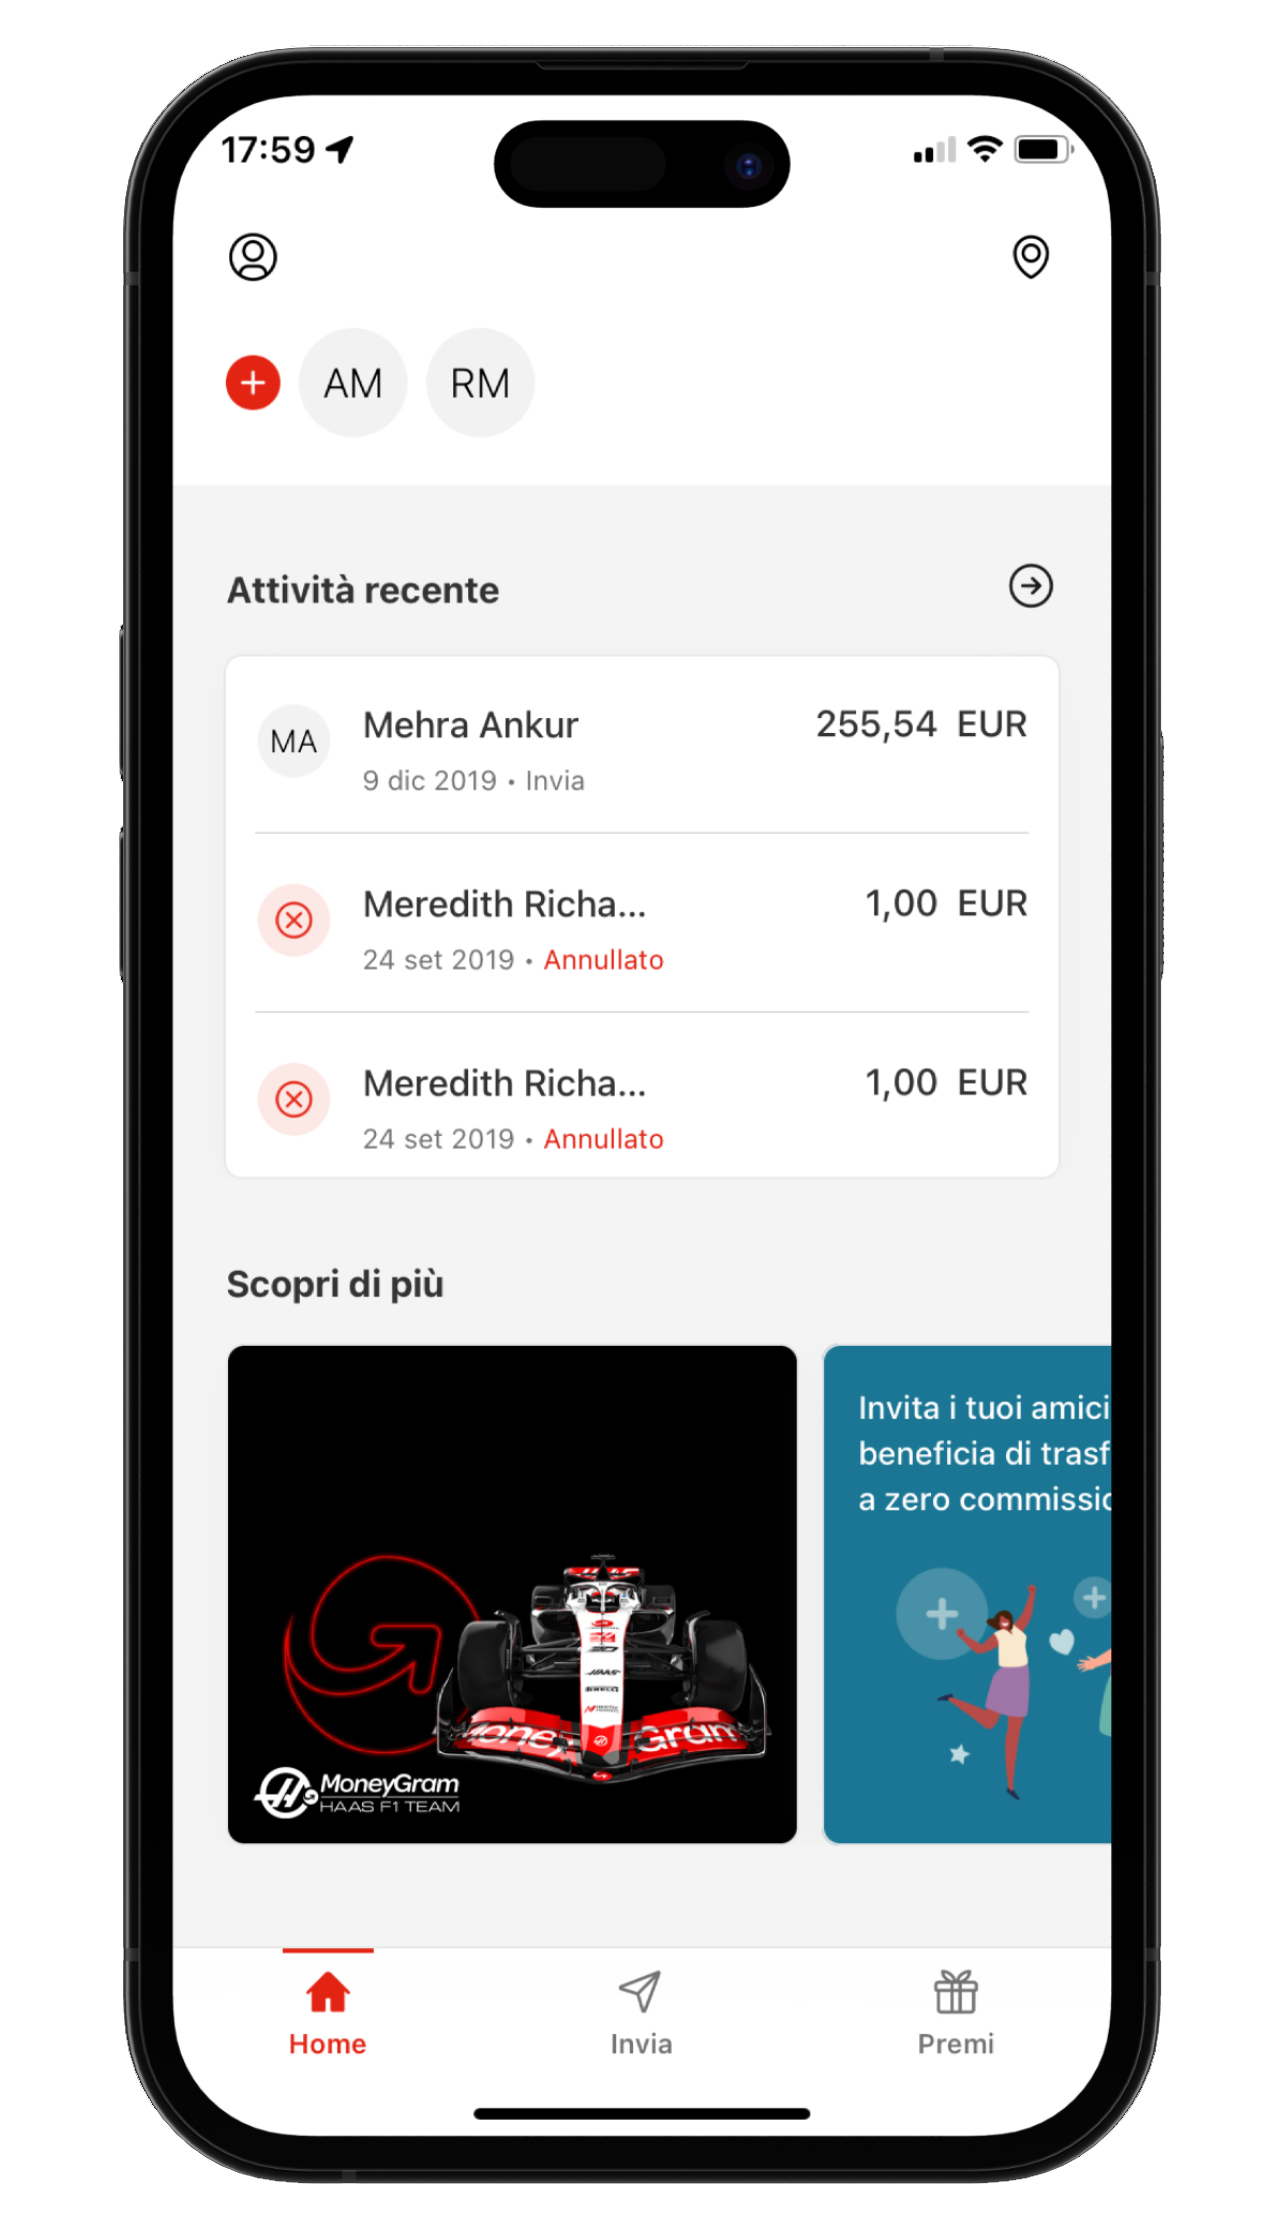 Immagine di un cellulare con l'app MoneyGram per i trasferimenti di denaro